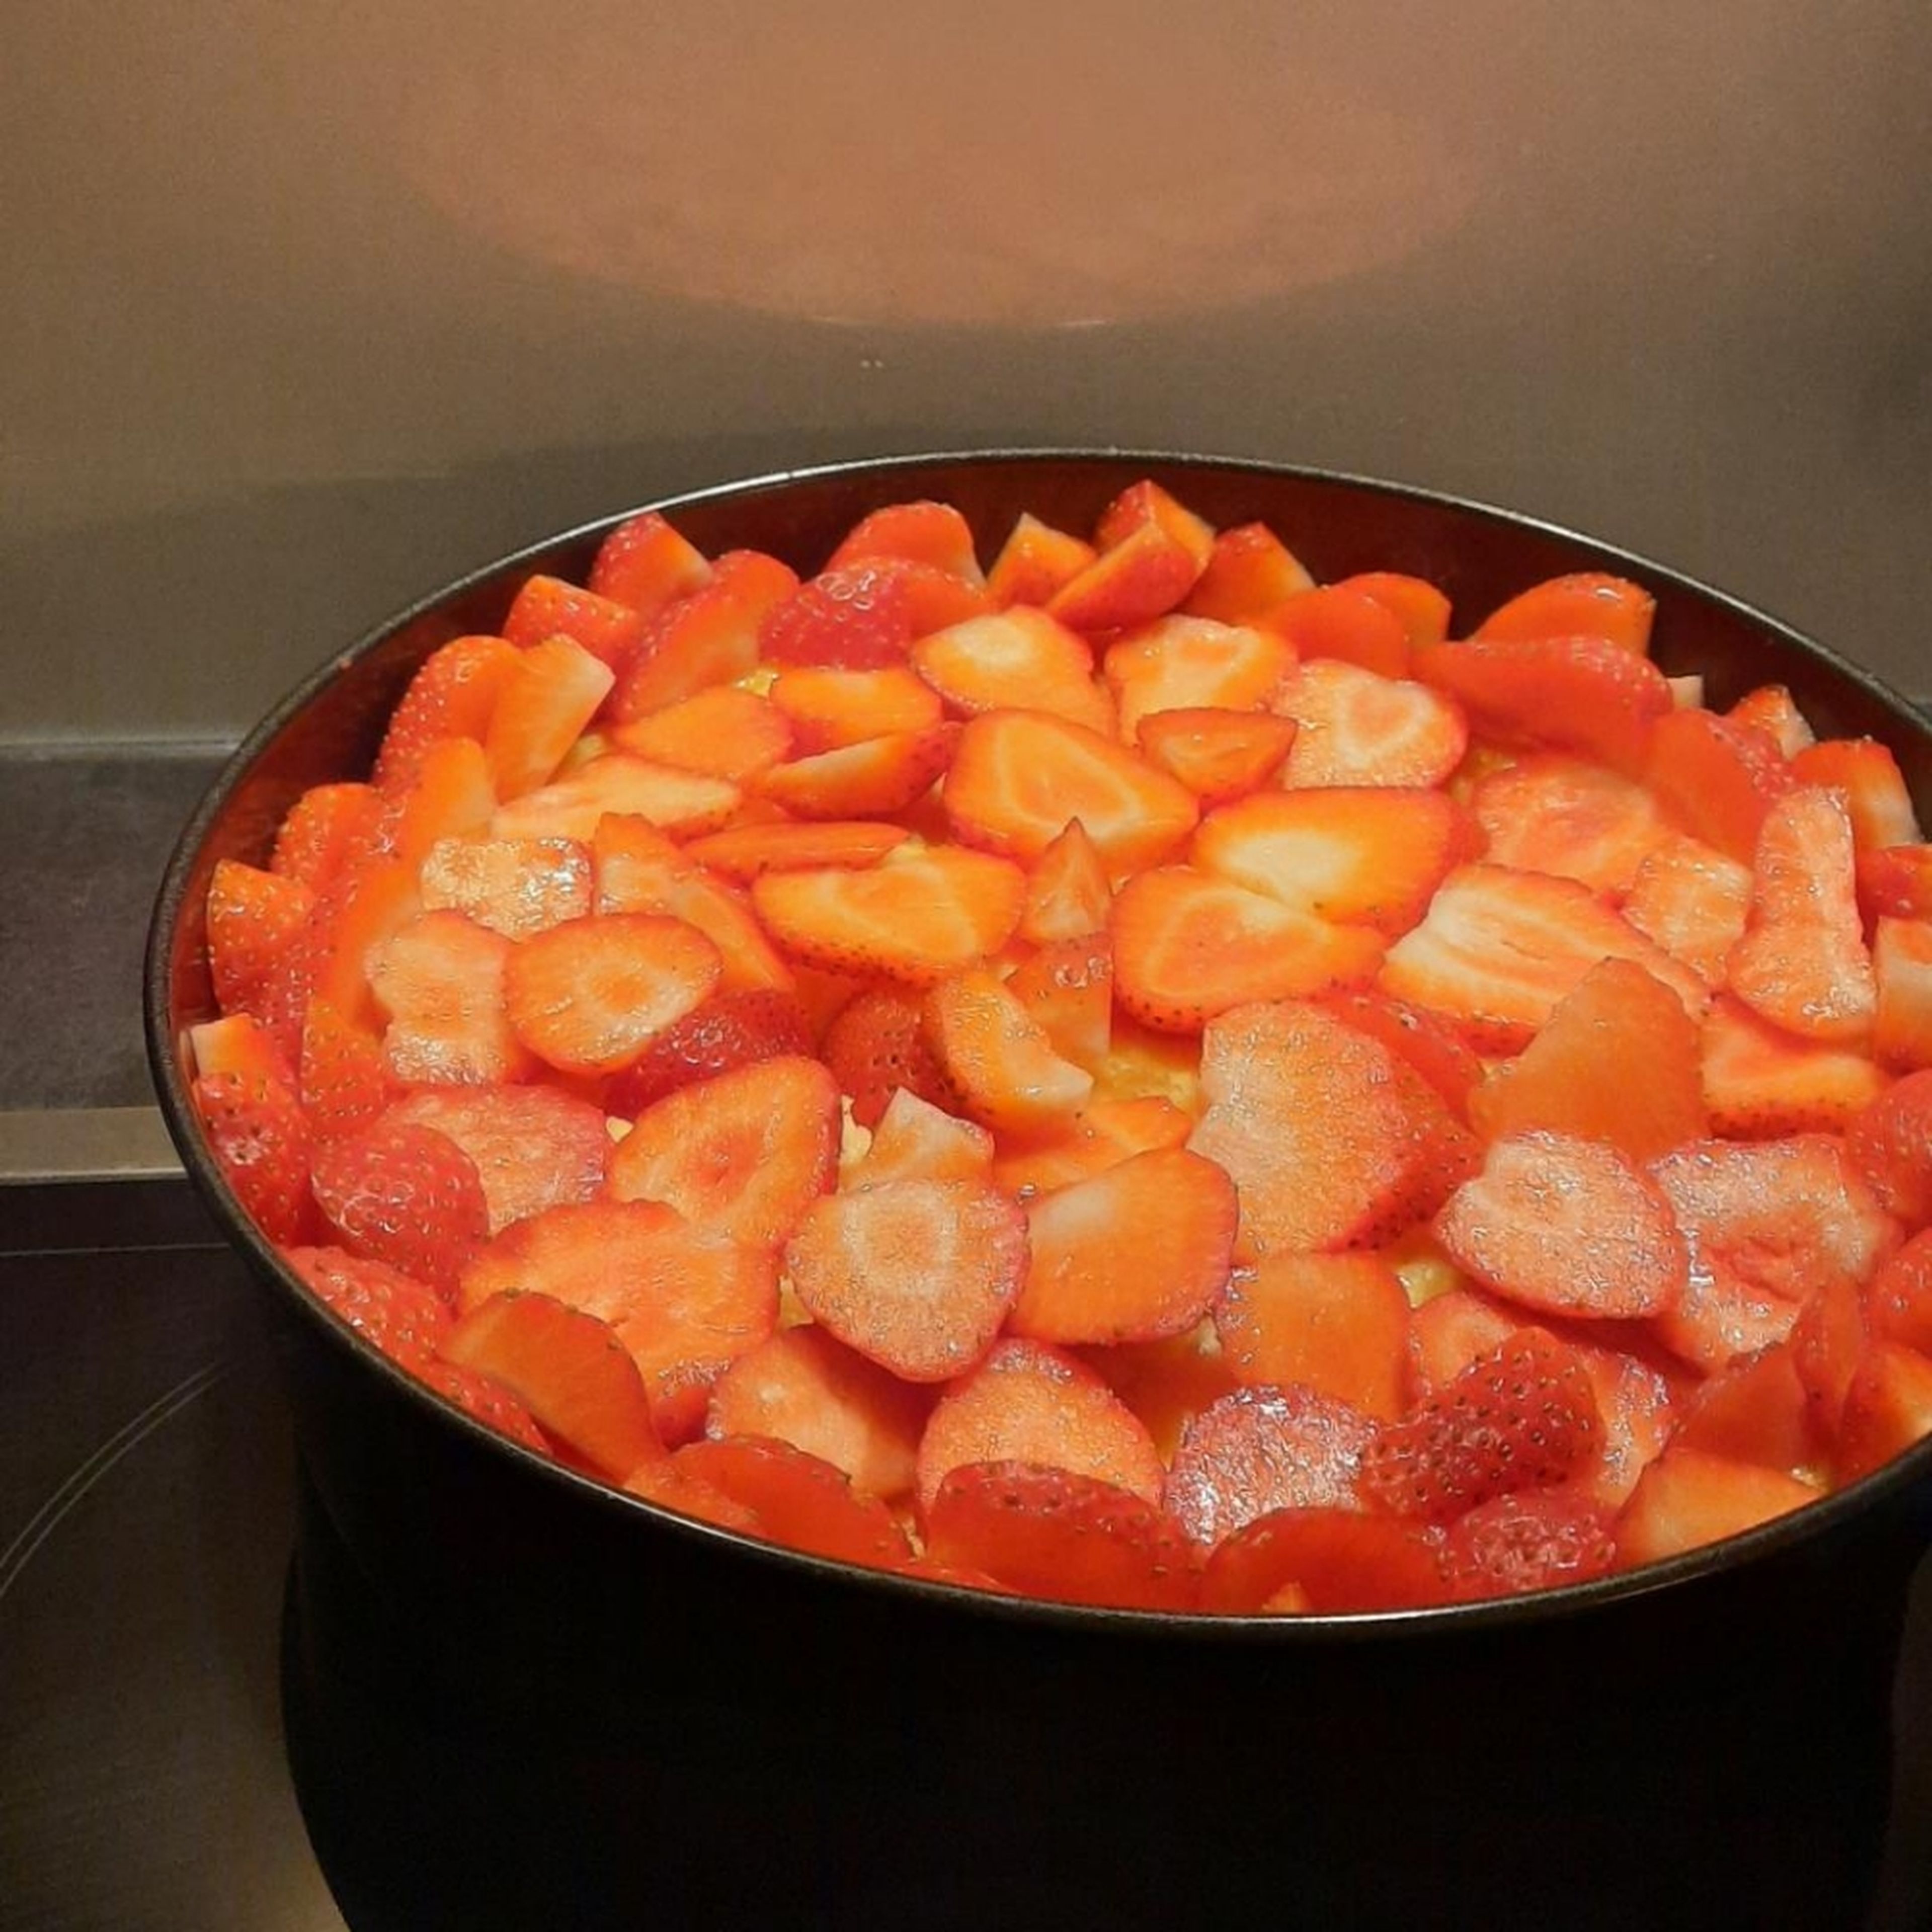 Die Erdbeeren waschen und in Scheiben schneiden. Sobald der Kuchen ausgekühlt ist die Erdbeeren darauf verteilen. Am Besten am Rand eine kleine Mauer mit den Erdbeeren auslegen, damit der Guss nicht zu sehr überlaufen kann.